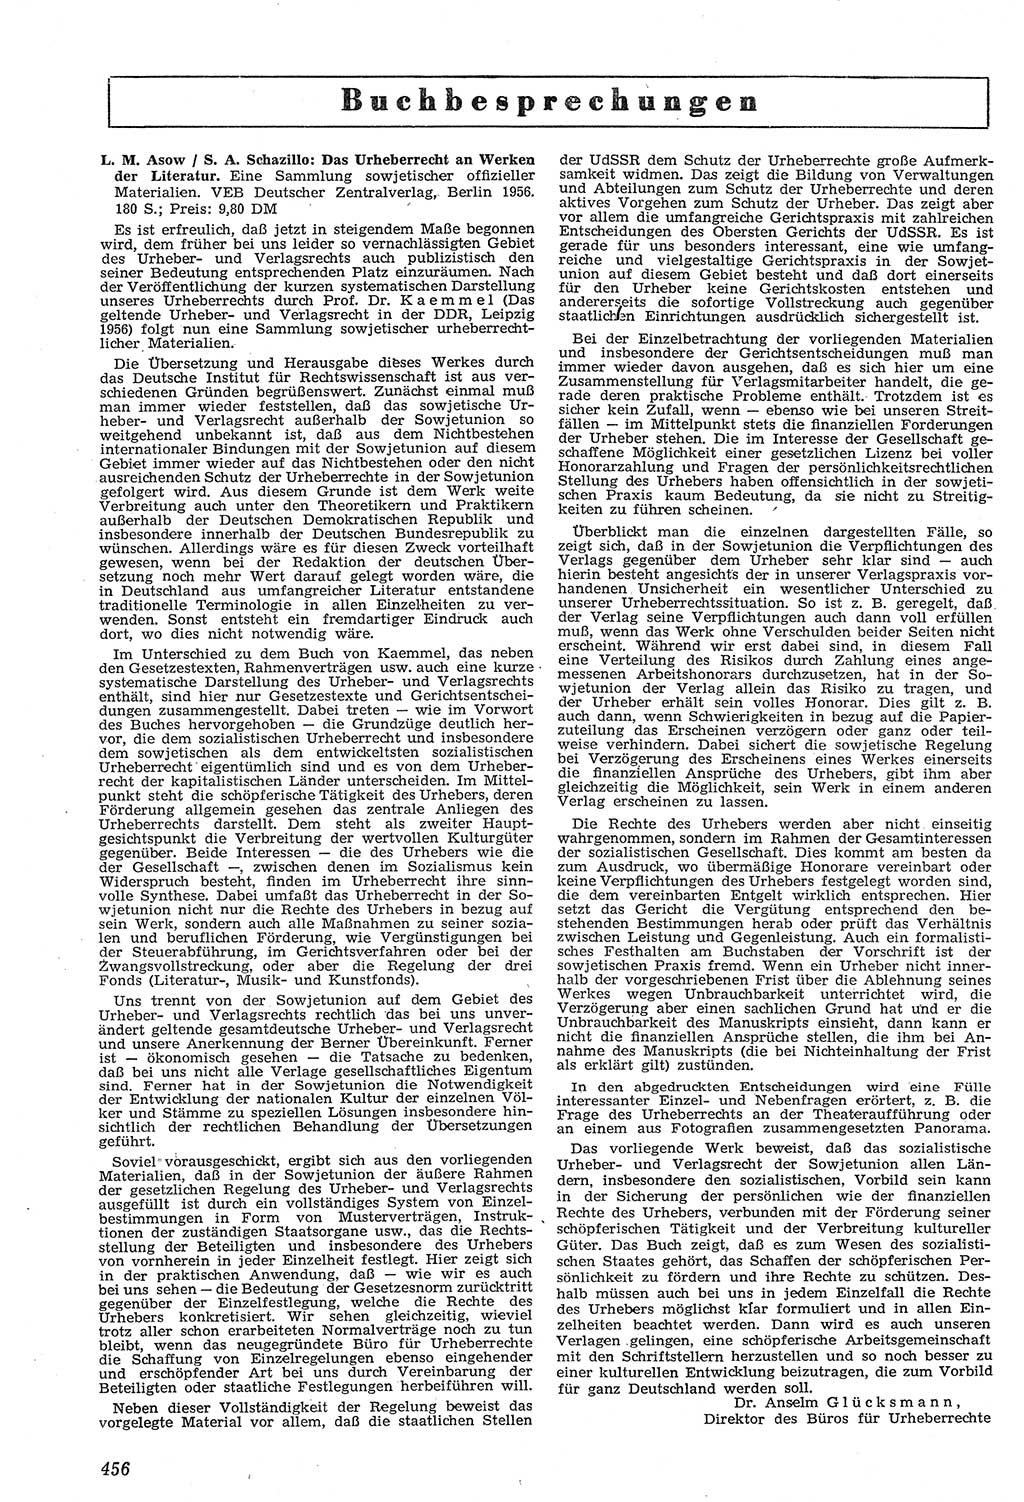 Neue Justiz (NJ), Zeitschrift für Recht und Rechtswissenschaft [Deutsche Demokratische Republik (DDR)], 11. Jahrgang 1957, Seite 456 (NJ DDR 1957, S. 456)